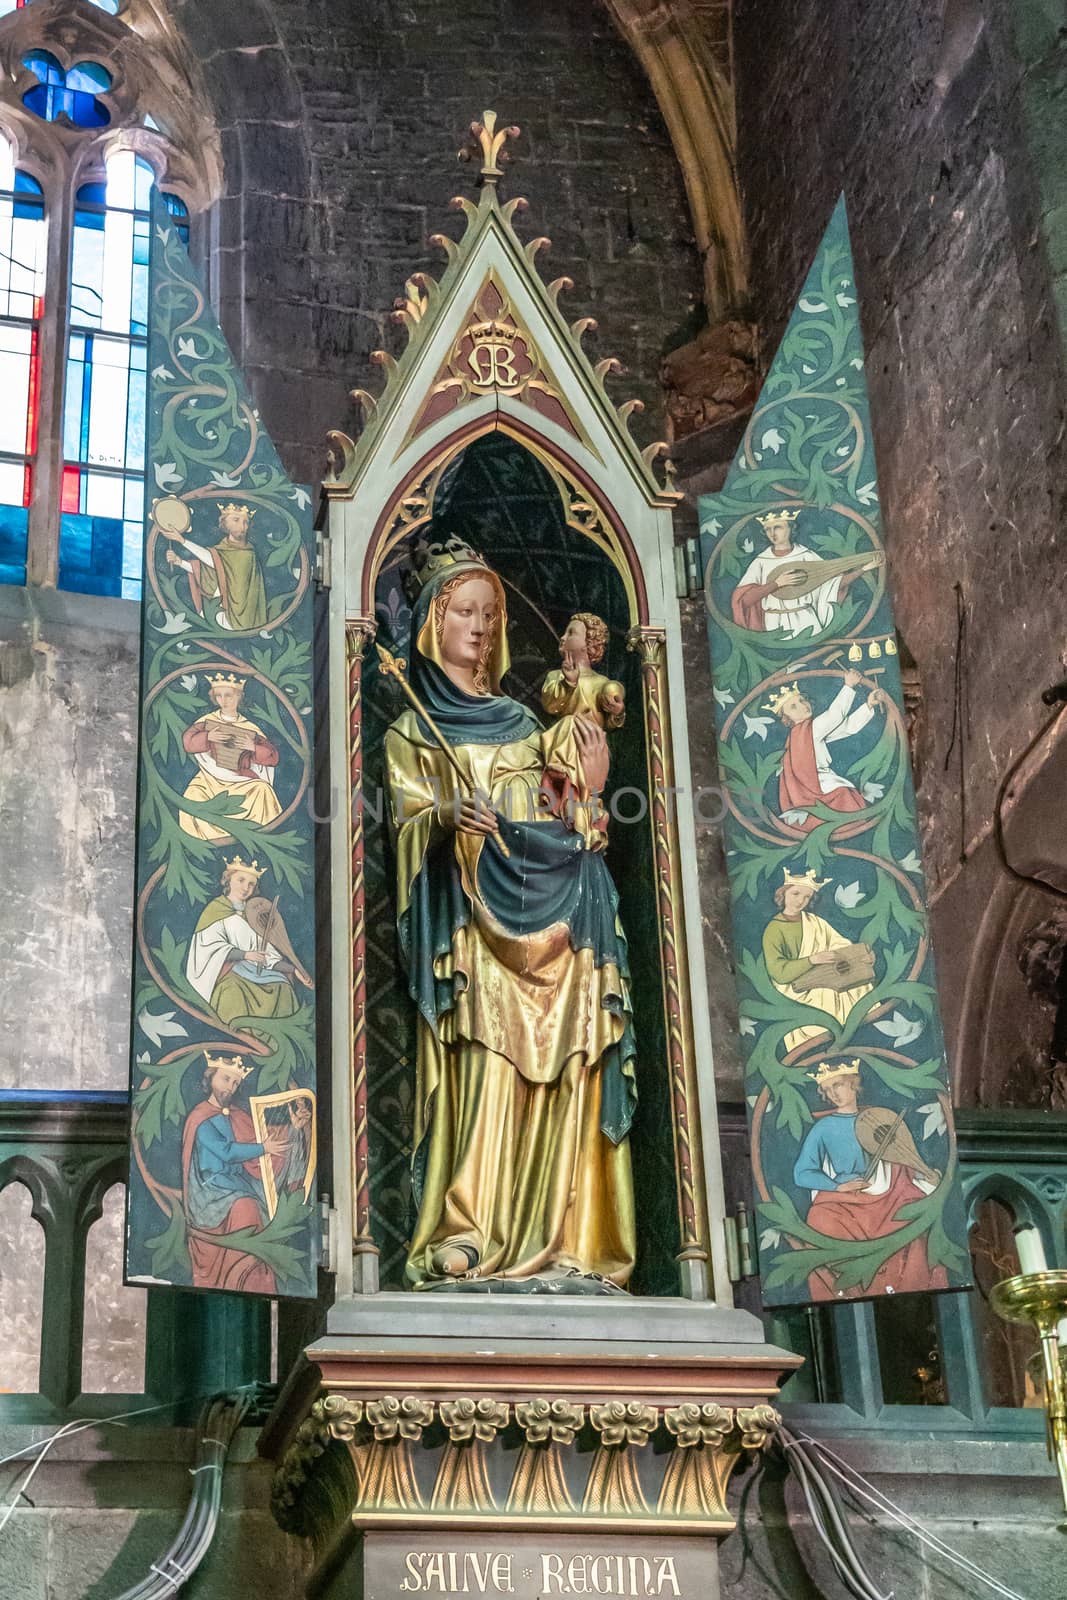 Sainte Regina in Collégiale Notre Dame de Dinant church, Belgiu by Claudine